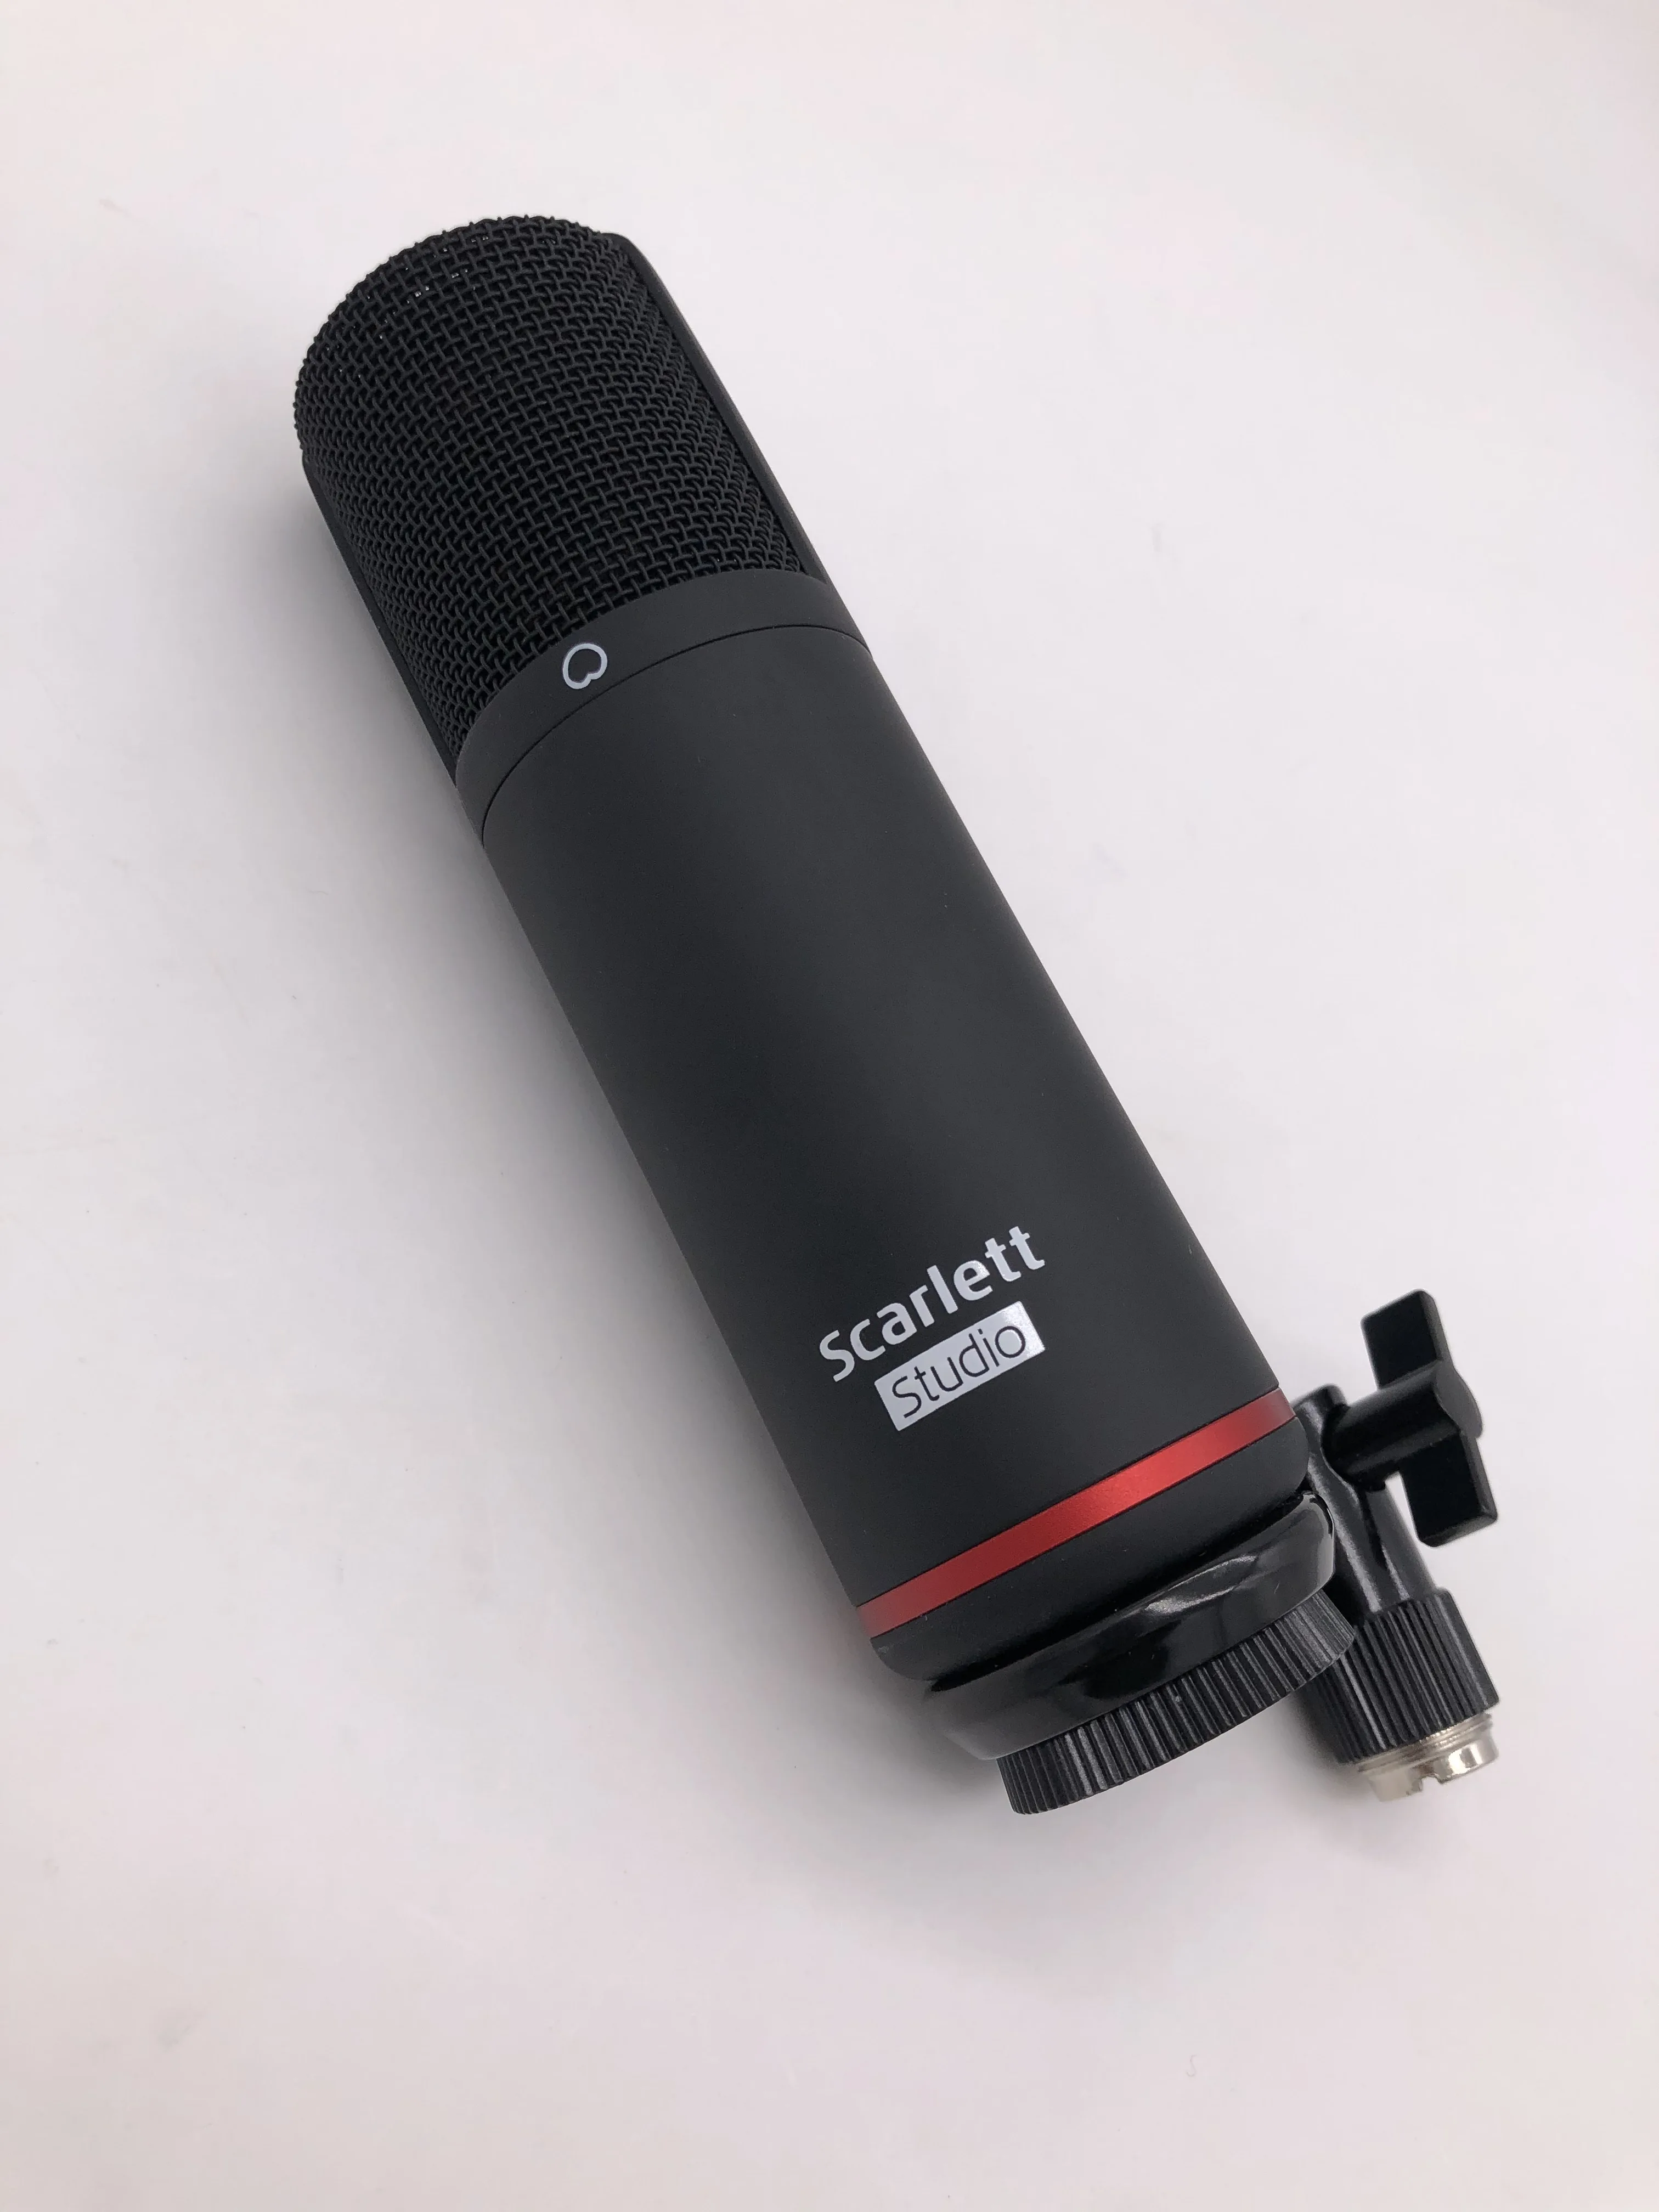 Focusrite Scarlett Studio CM25 MkIII конденсаторный микрофон для студийной записи с кабелем 3 м XLR